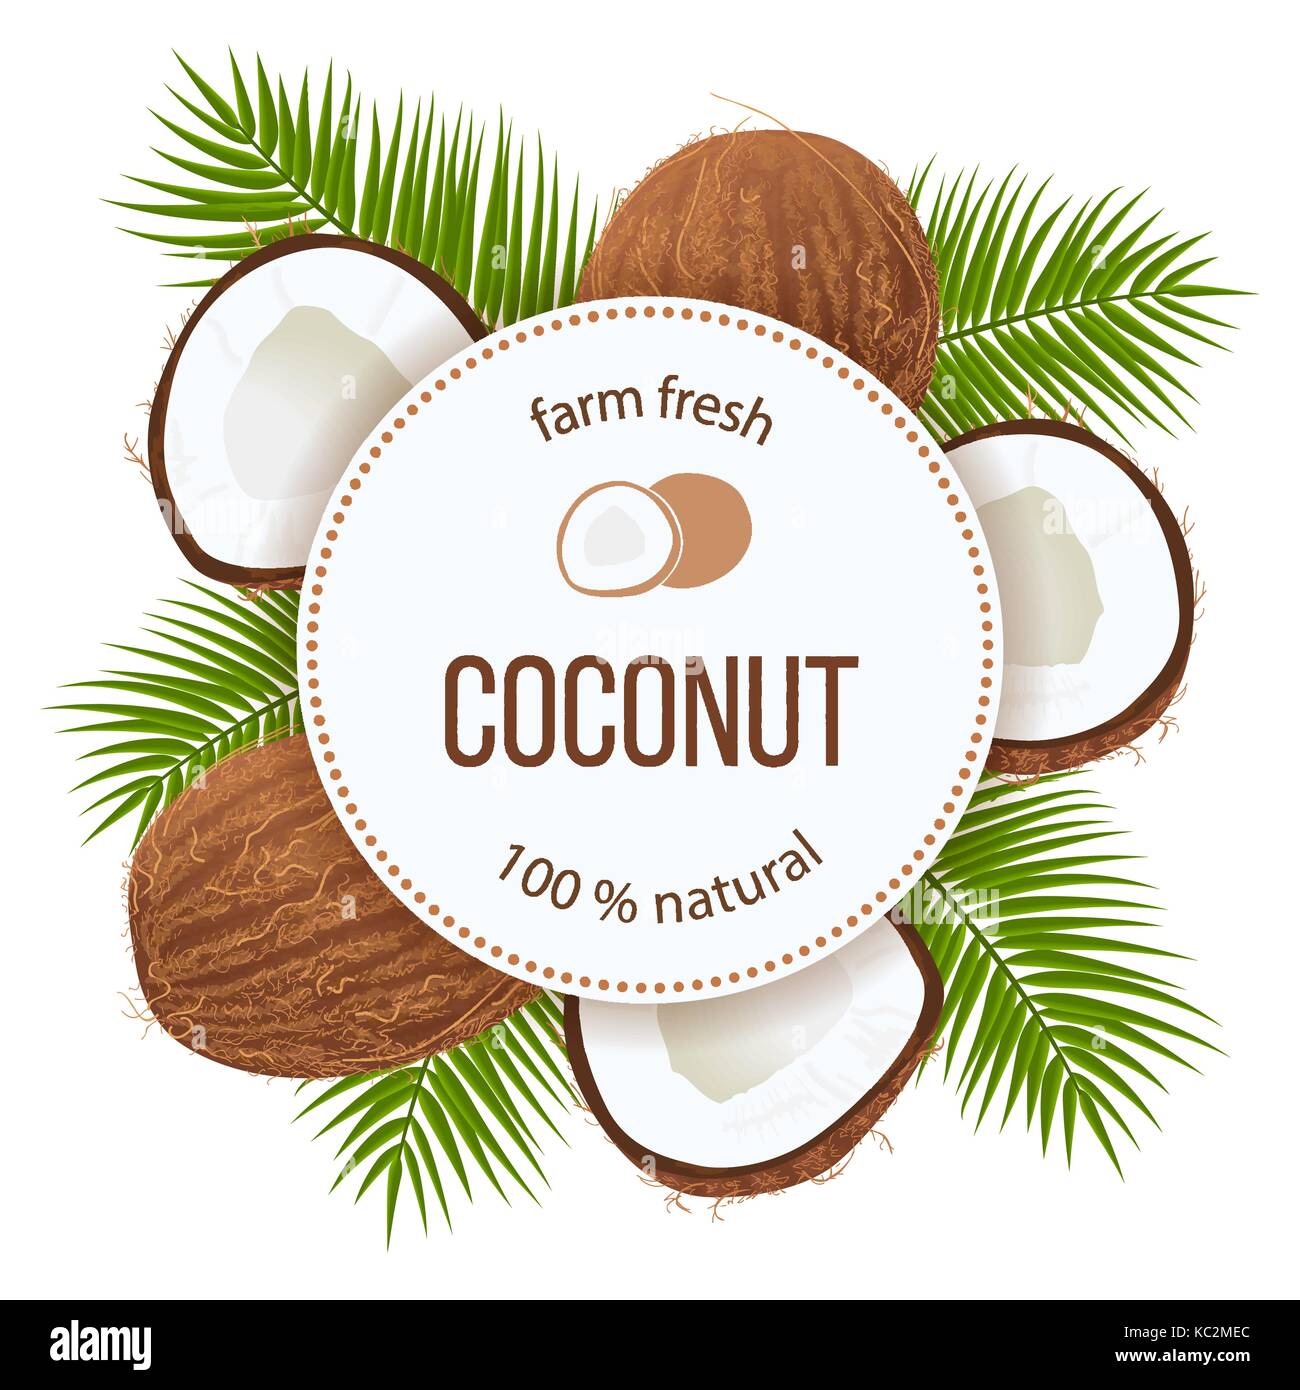 Feuilles de palme et de coco mûre cercle autour d'un insigne avec texte farm fresh 100 % natural Illustration de Vecteur